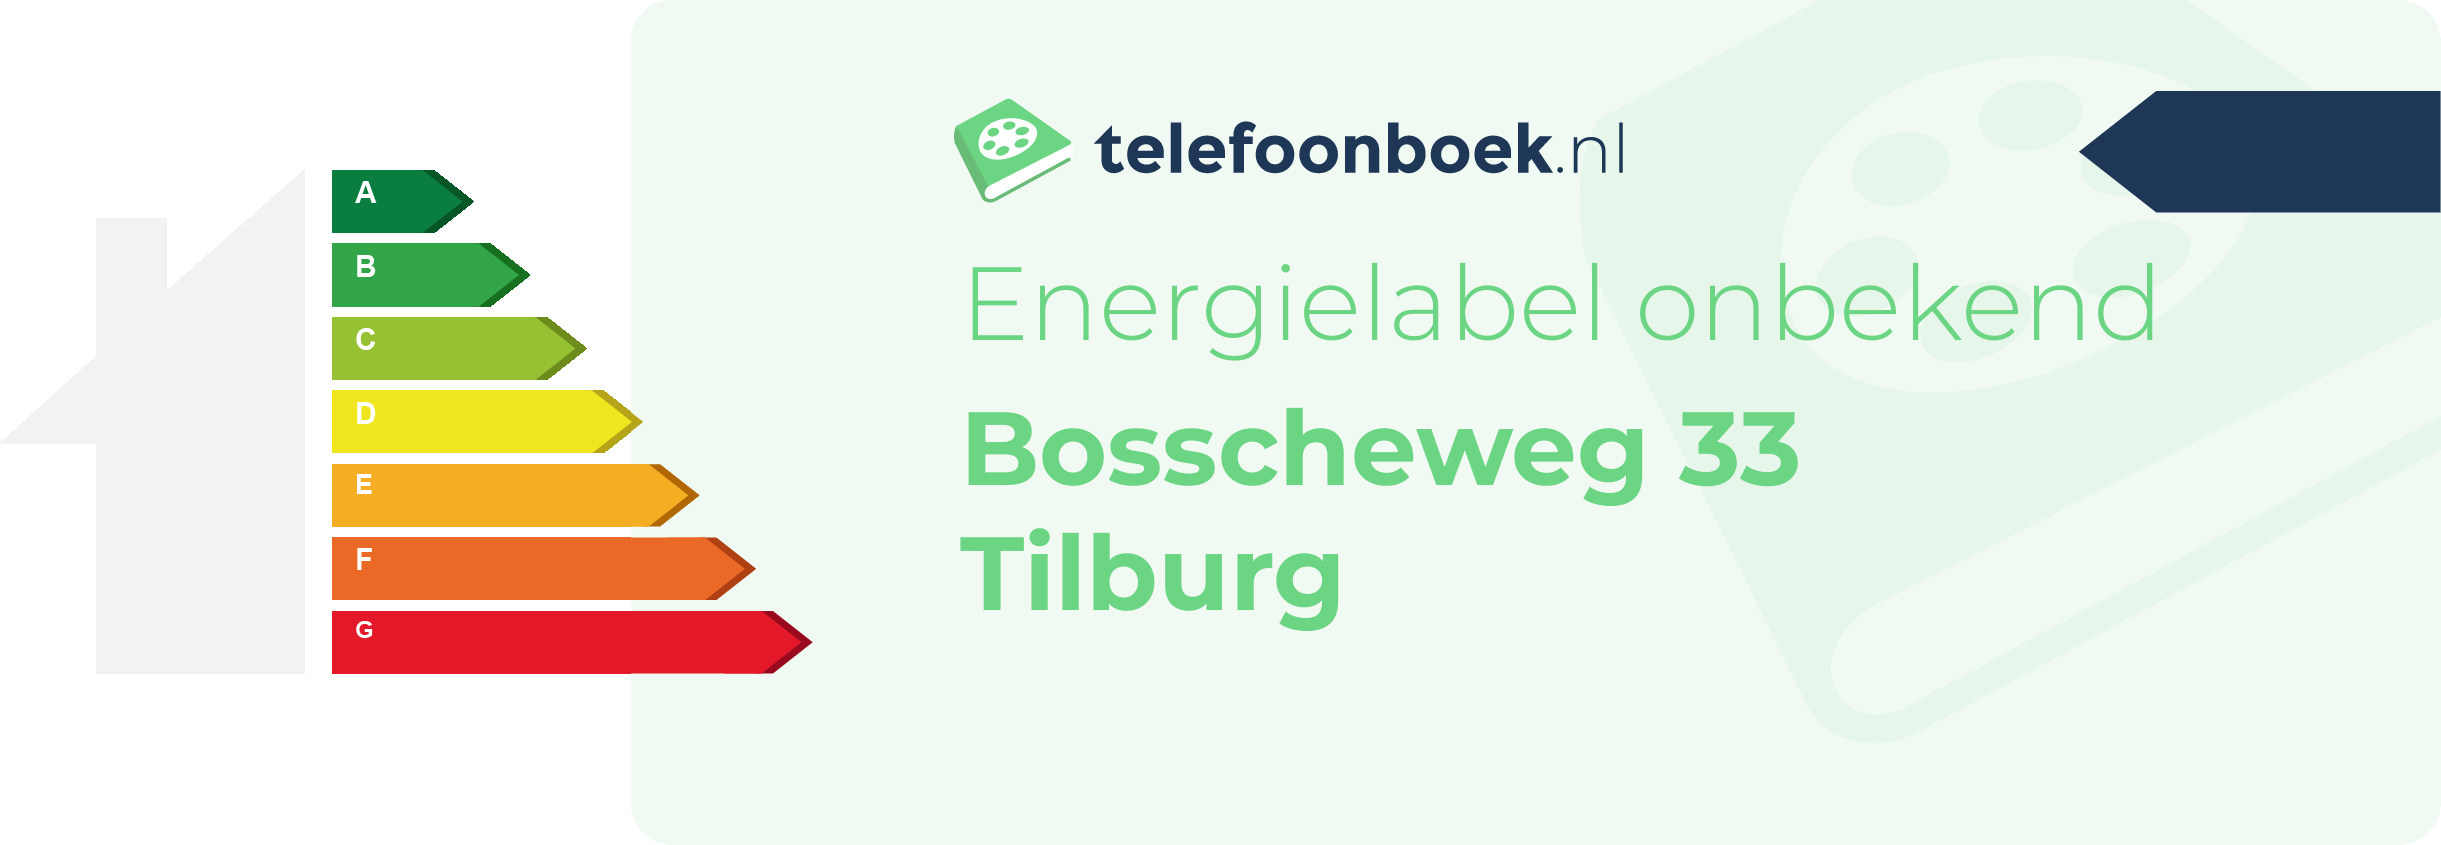 Energielabel Bosscheweg 33 Tilburg